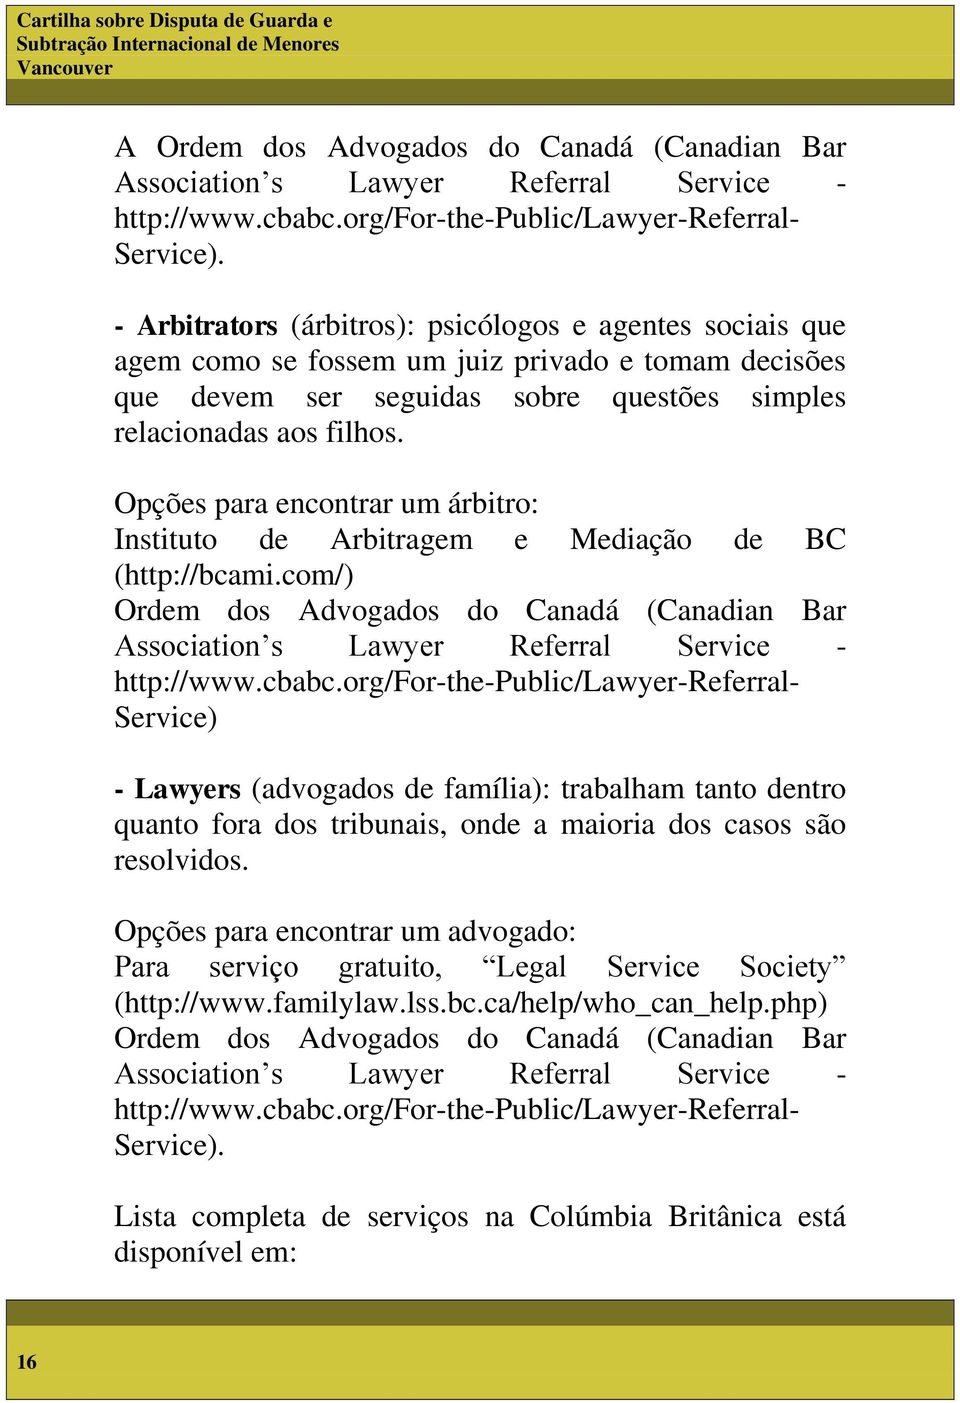 Opções para encontrar um árbitro: Instituto de Arbitragem e Mediação de BC (http://bcami.com/) Ordem dos Advogados do Canadá (Canadian Bar Association s Lawyer Referral Service - http://www.cbabc.